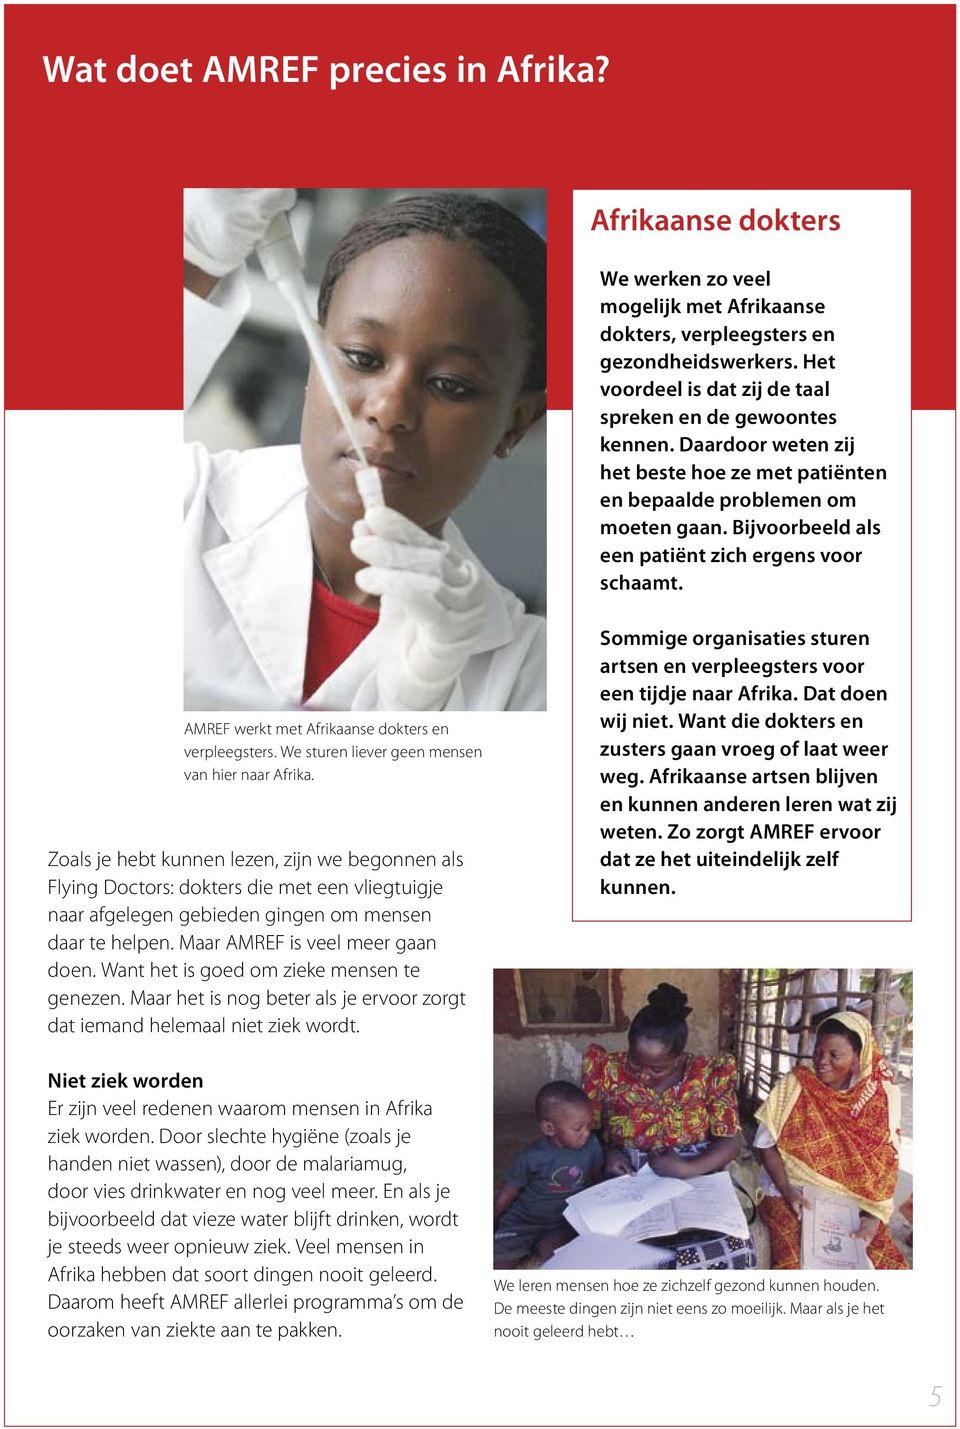 Bijvoorbeeld als een patiënt zich ergens voor schaamt. AMREF werkt met Afrikaanse dokters en verpleegsters. We sturen liever geen mensen van hier naar Afrika.